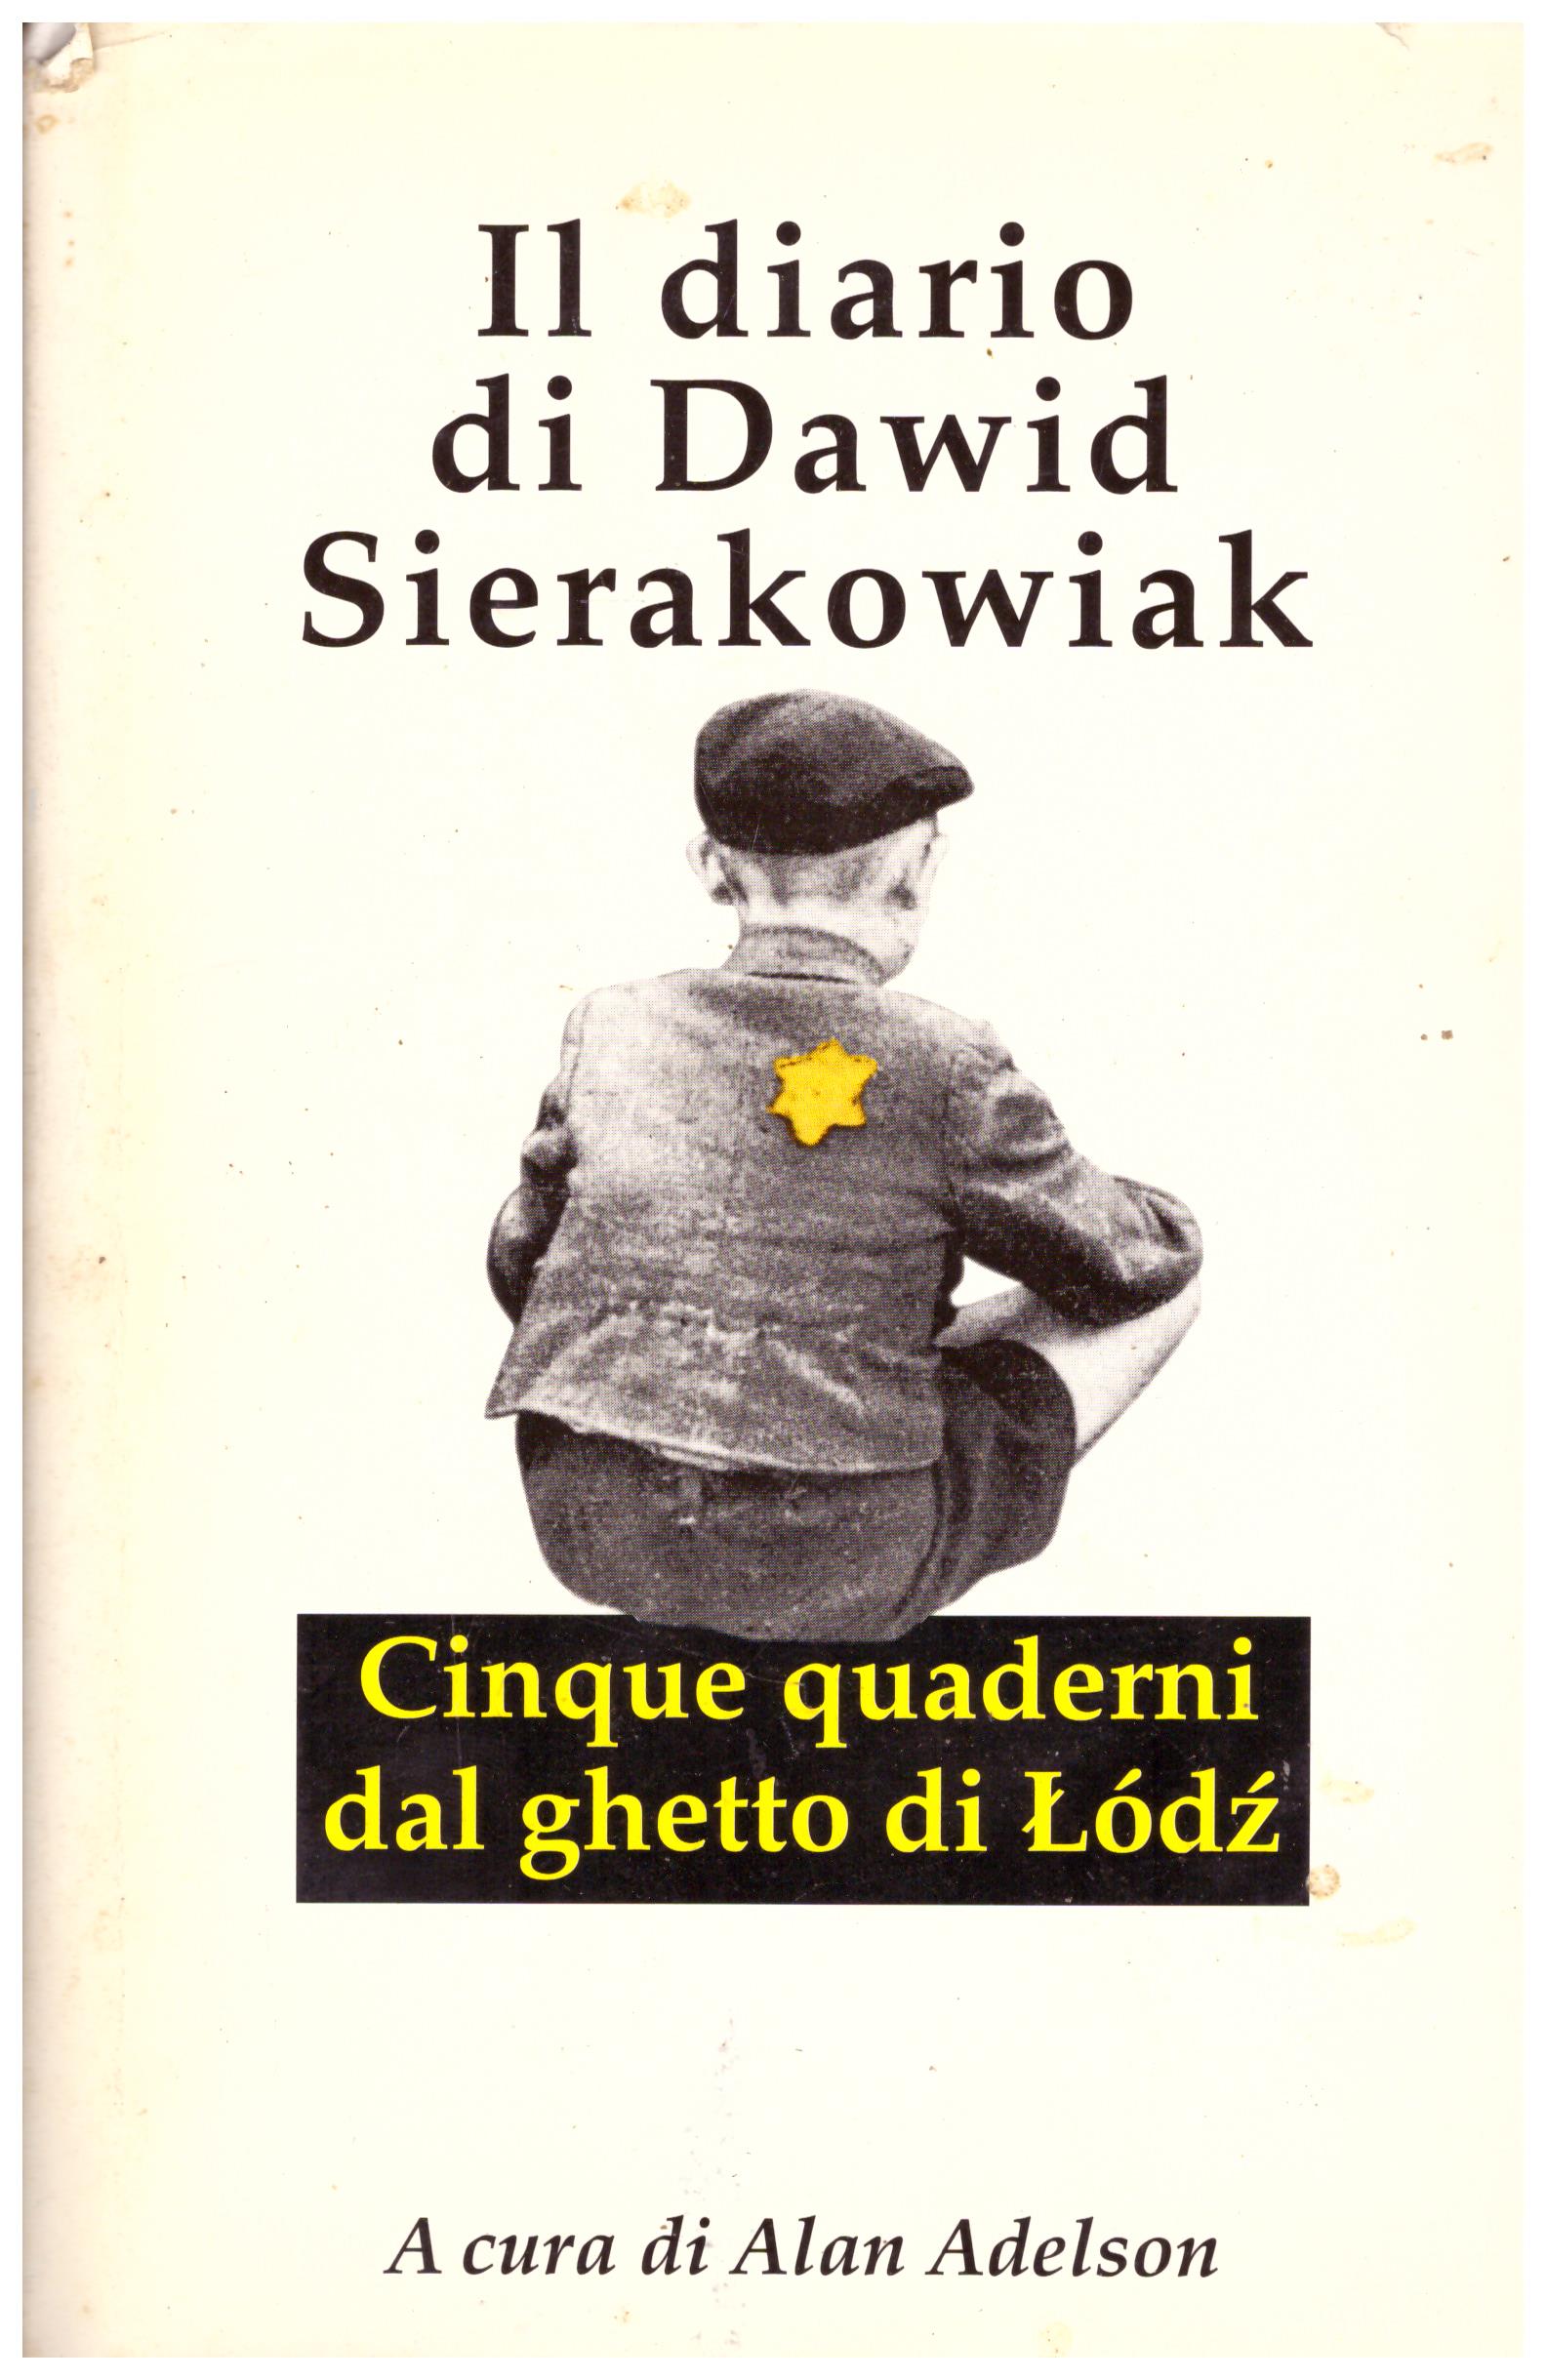 Titolo: Il diario di David Sierakowiak Autore: AA.VV. Editore: Einaudi, 1996